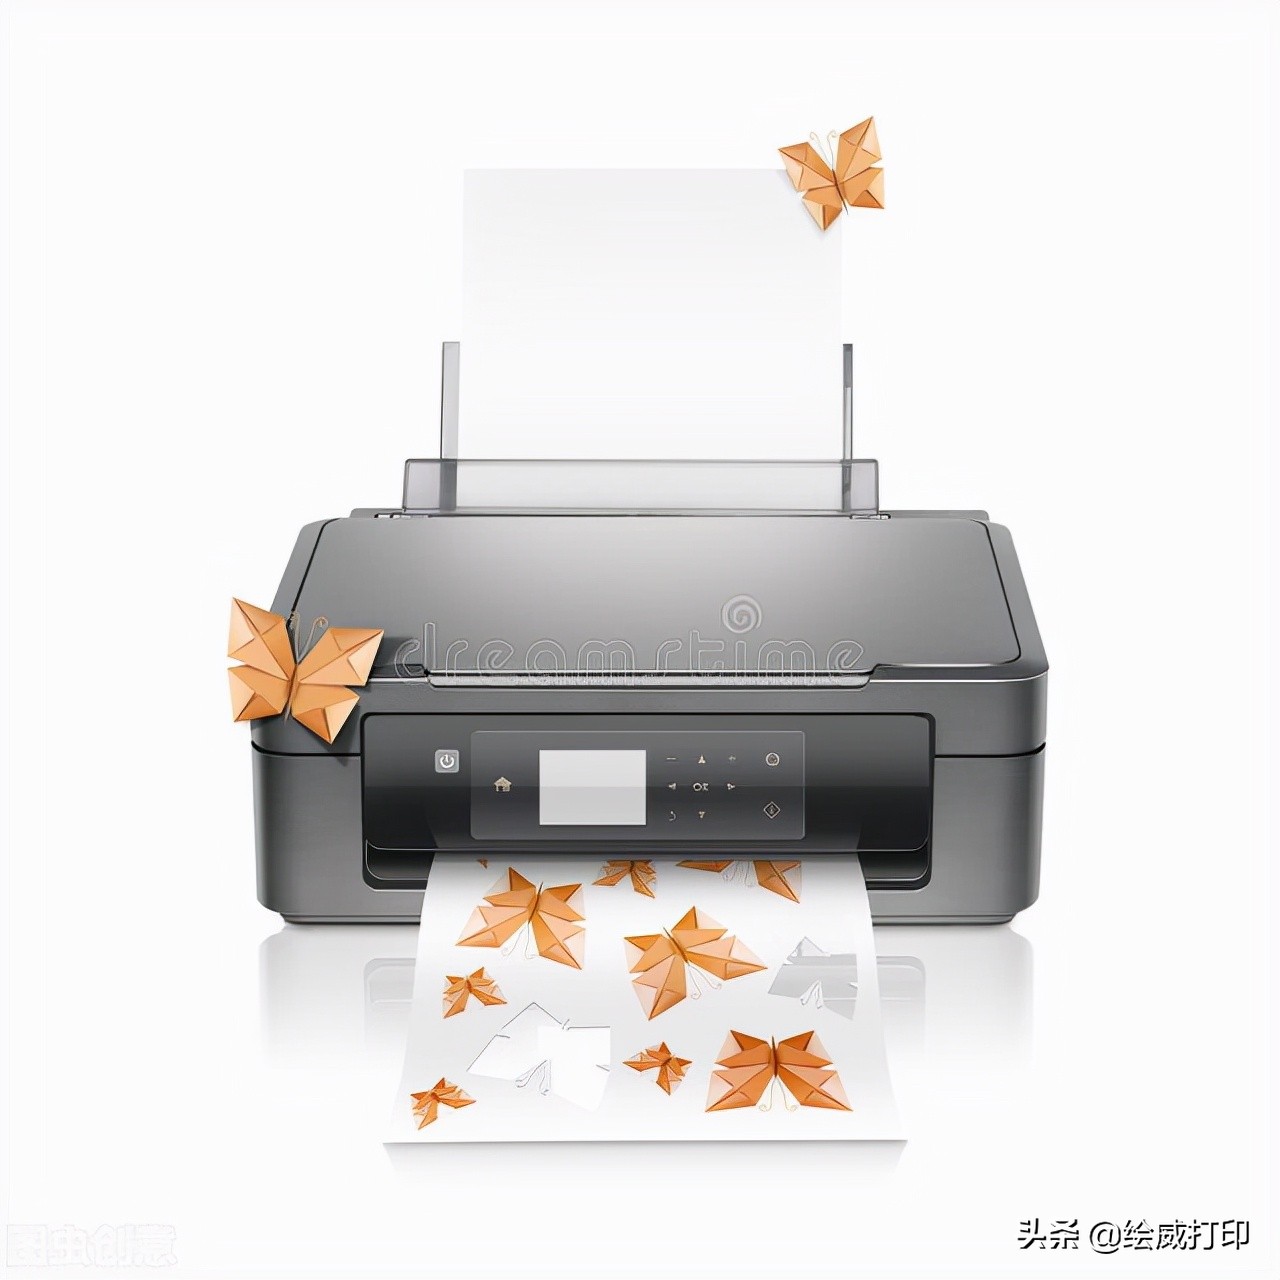 连接打印机需要安装什么驱动，打印机安装常识详解？